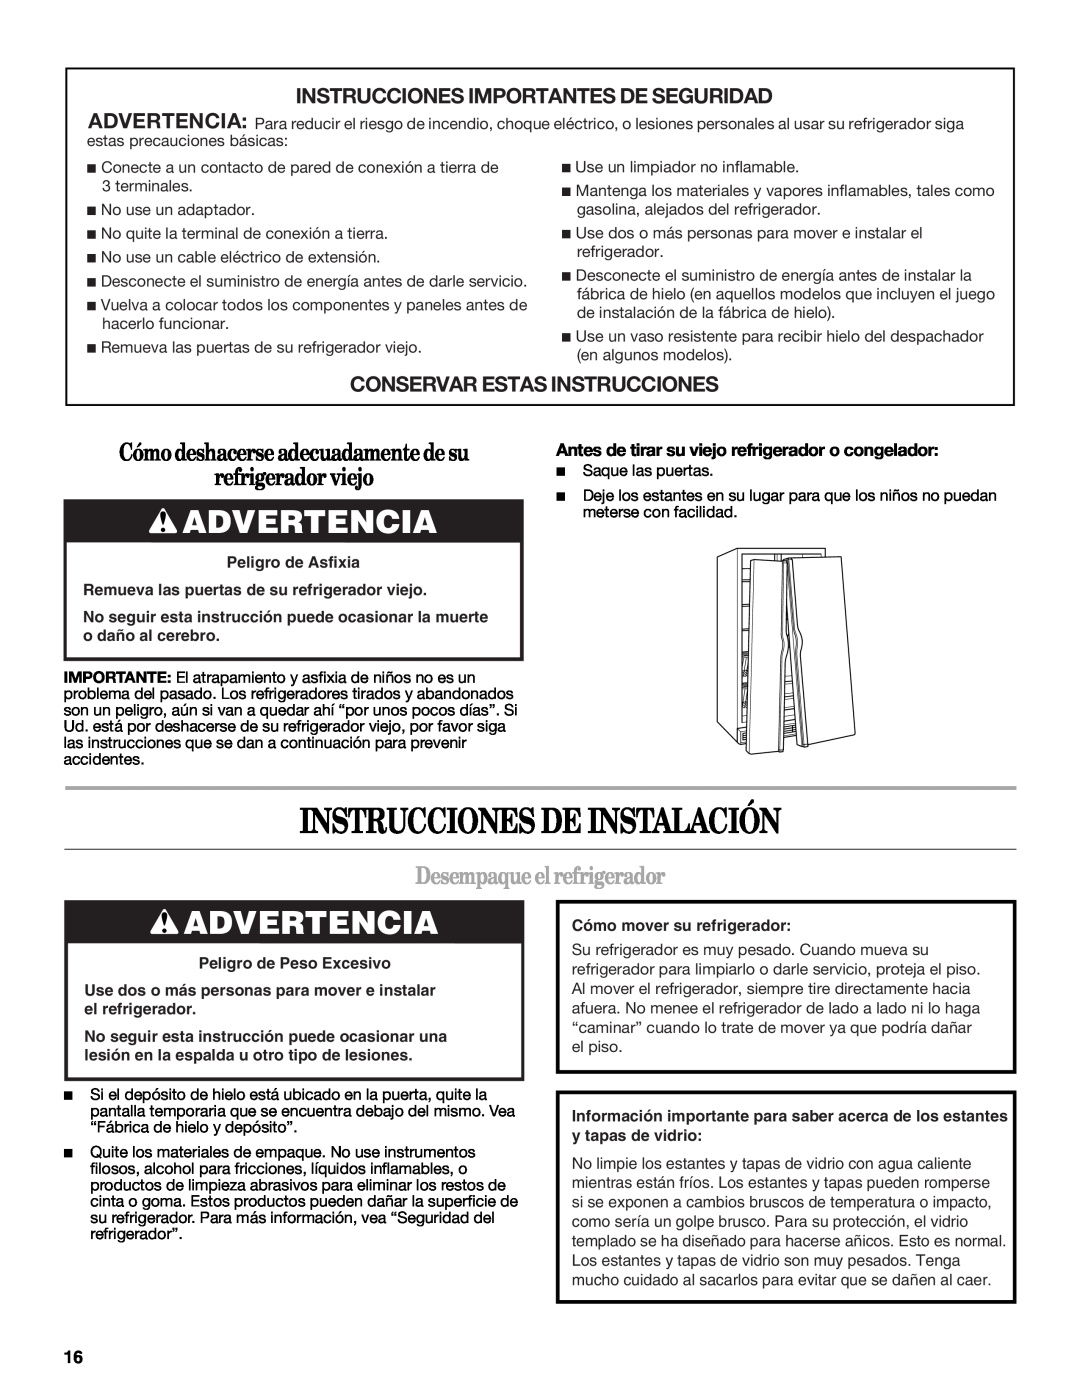 Whirlpool GD5NHAXSB00 Instrucciones De Instalación, Advertencia, Cómodeshacerseadecuadamentedesu refrigerador viejo 